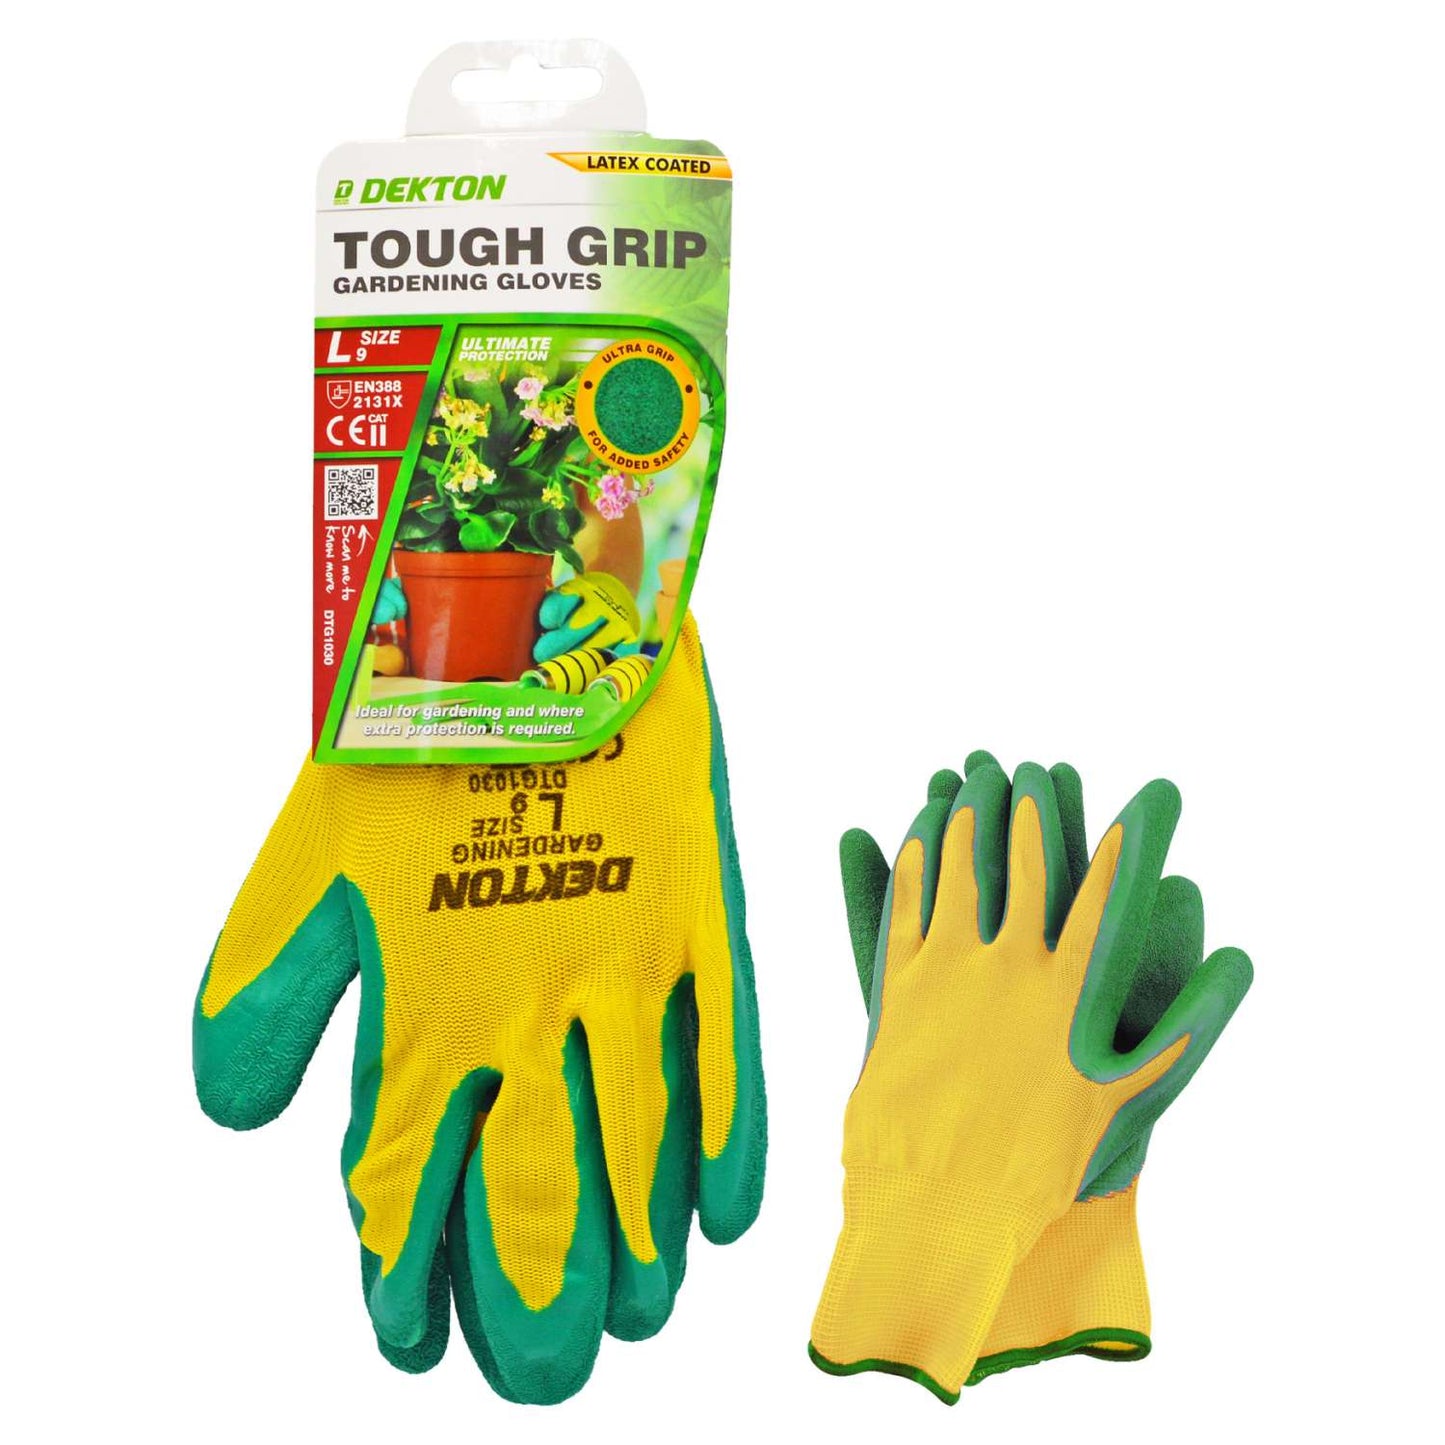 Dekton Tough Grip Gardening Gloves - Size 9 (Large)